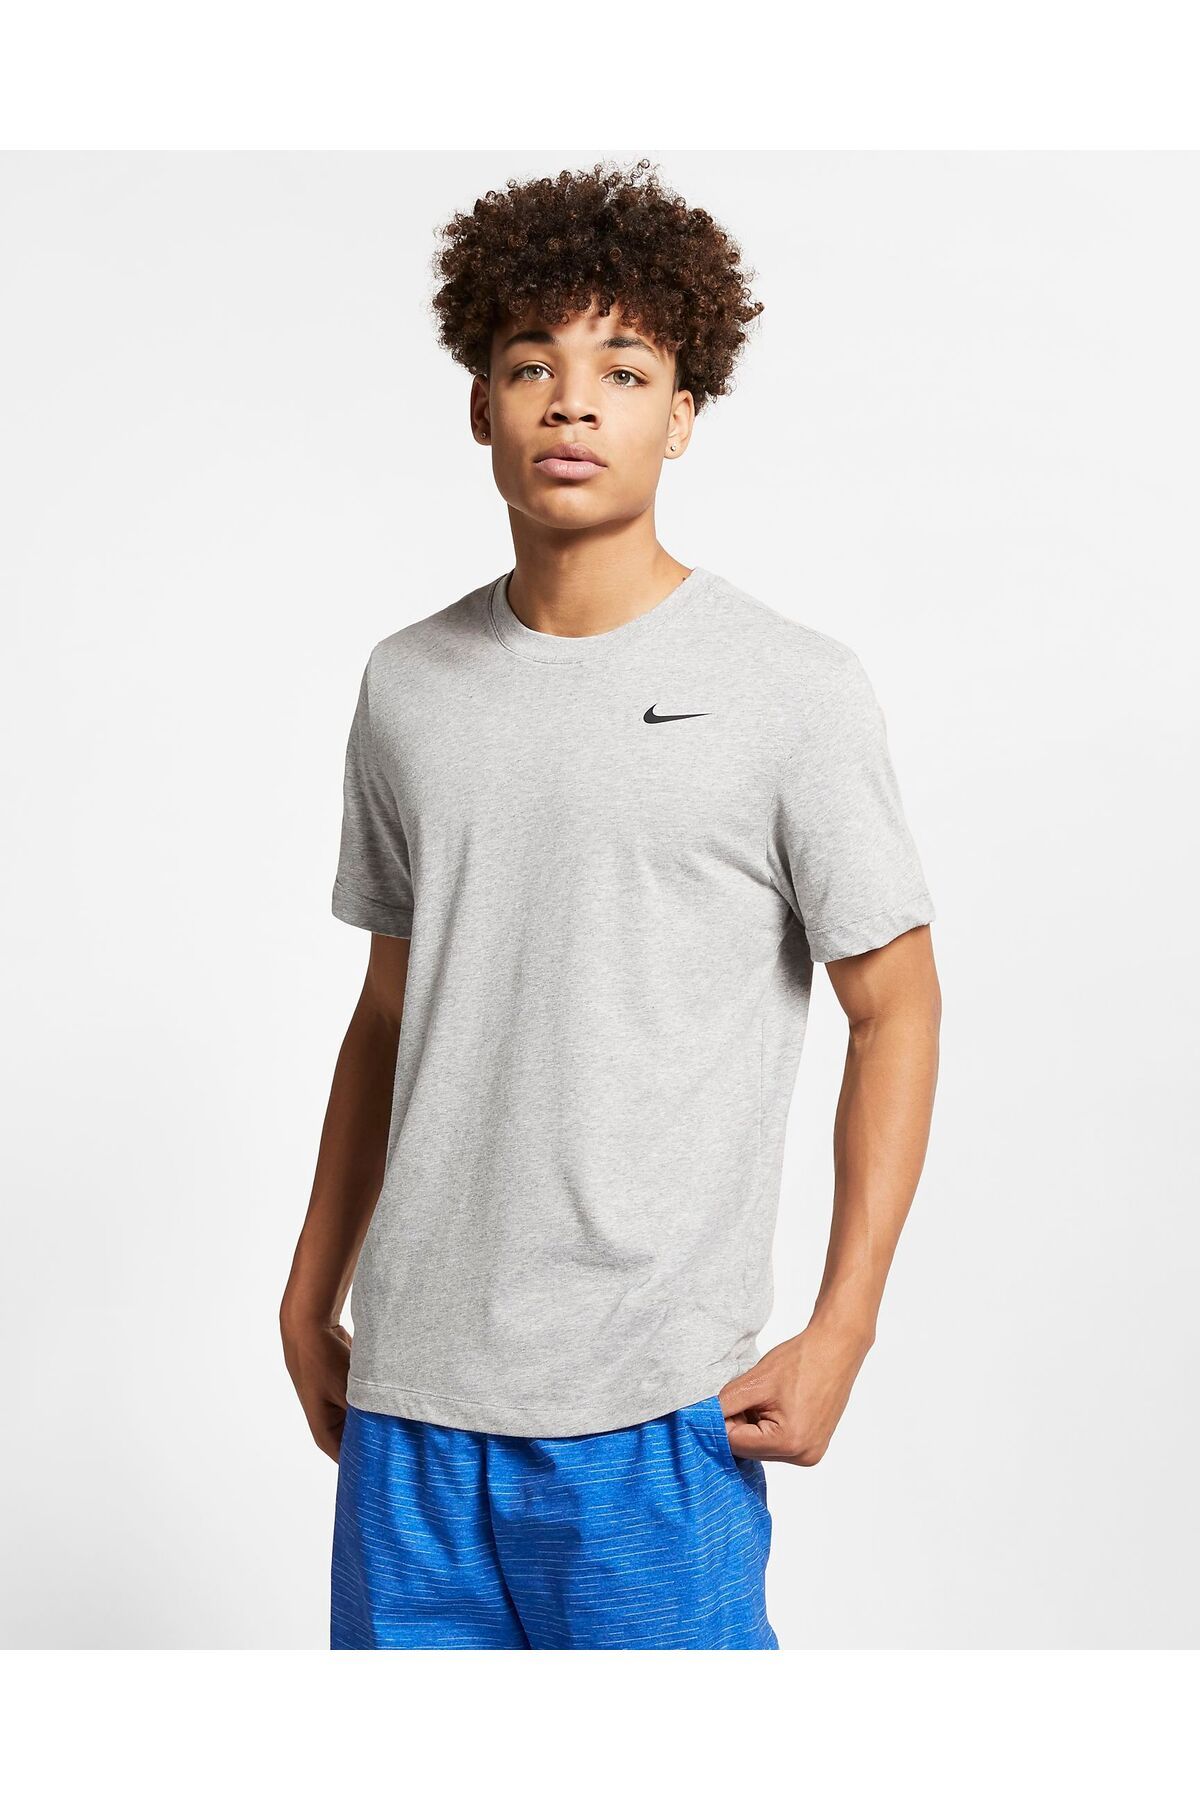 Nike Dri-fıt Erkek T-shirt - Cn9811-063